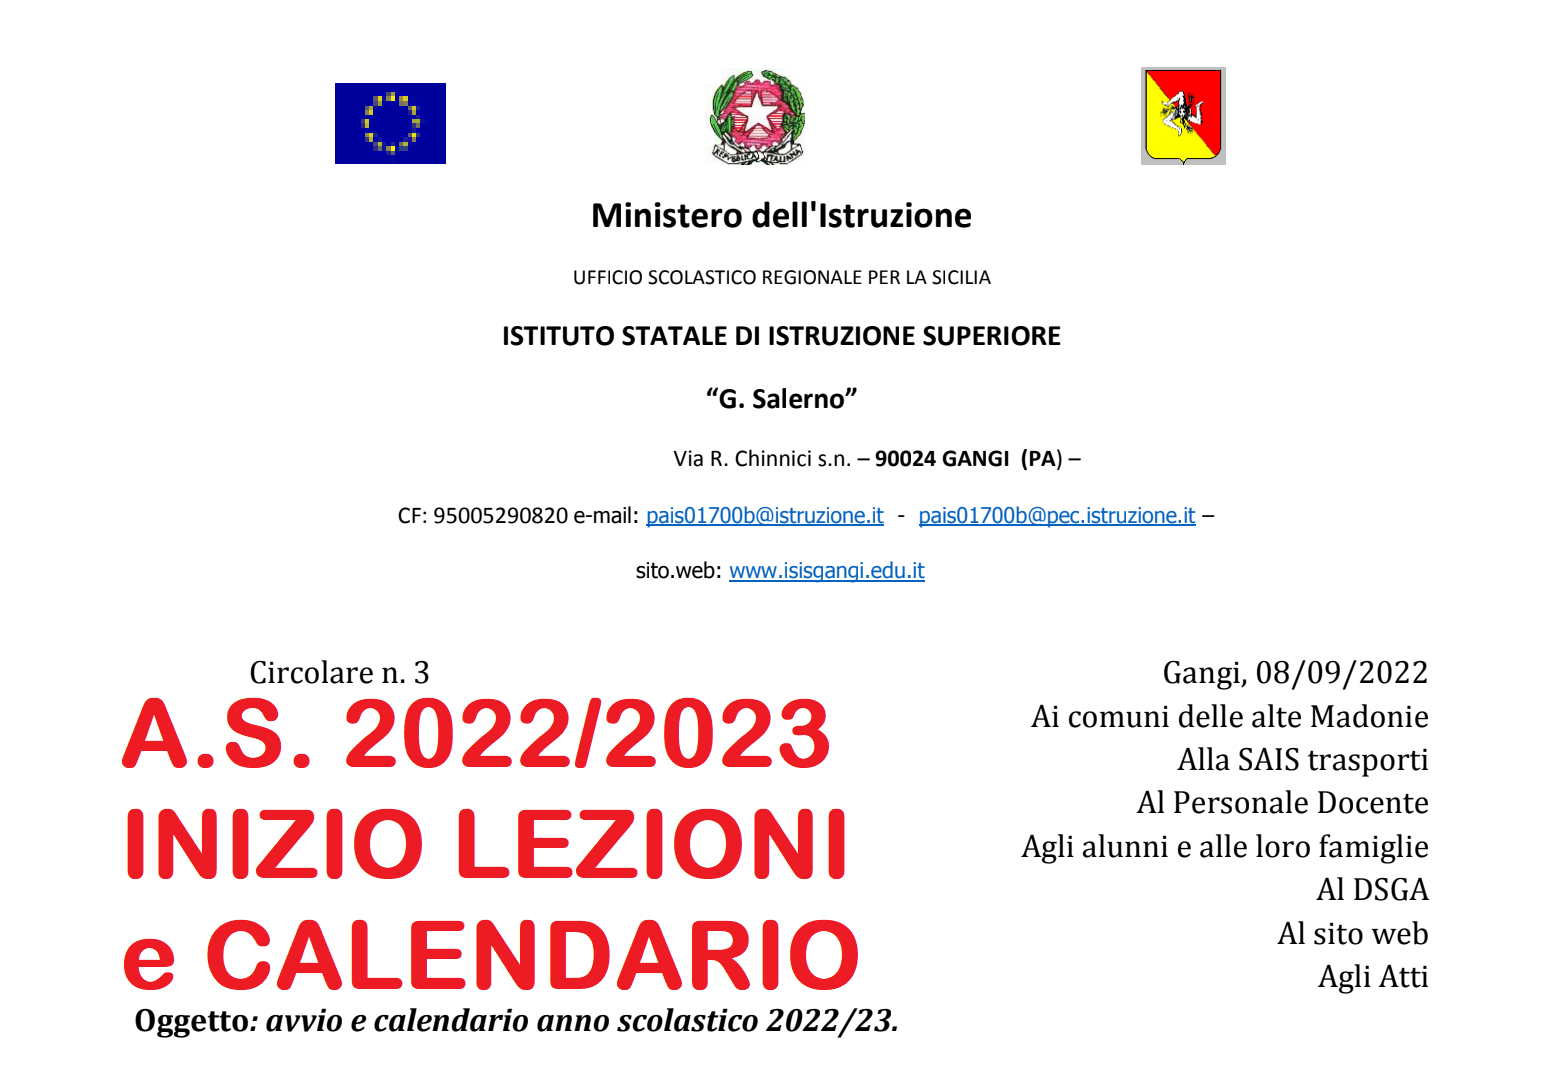 Calendario 2022 2023